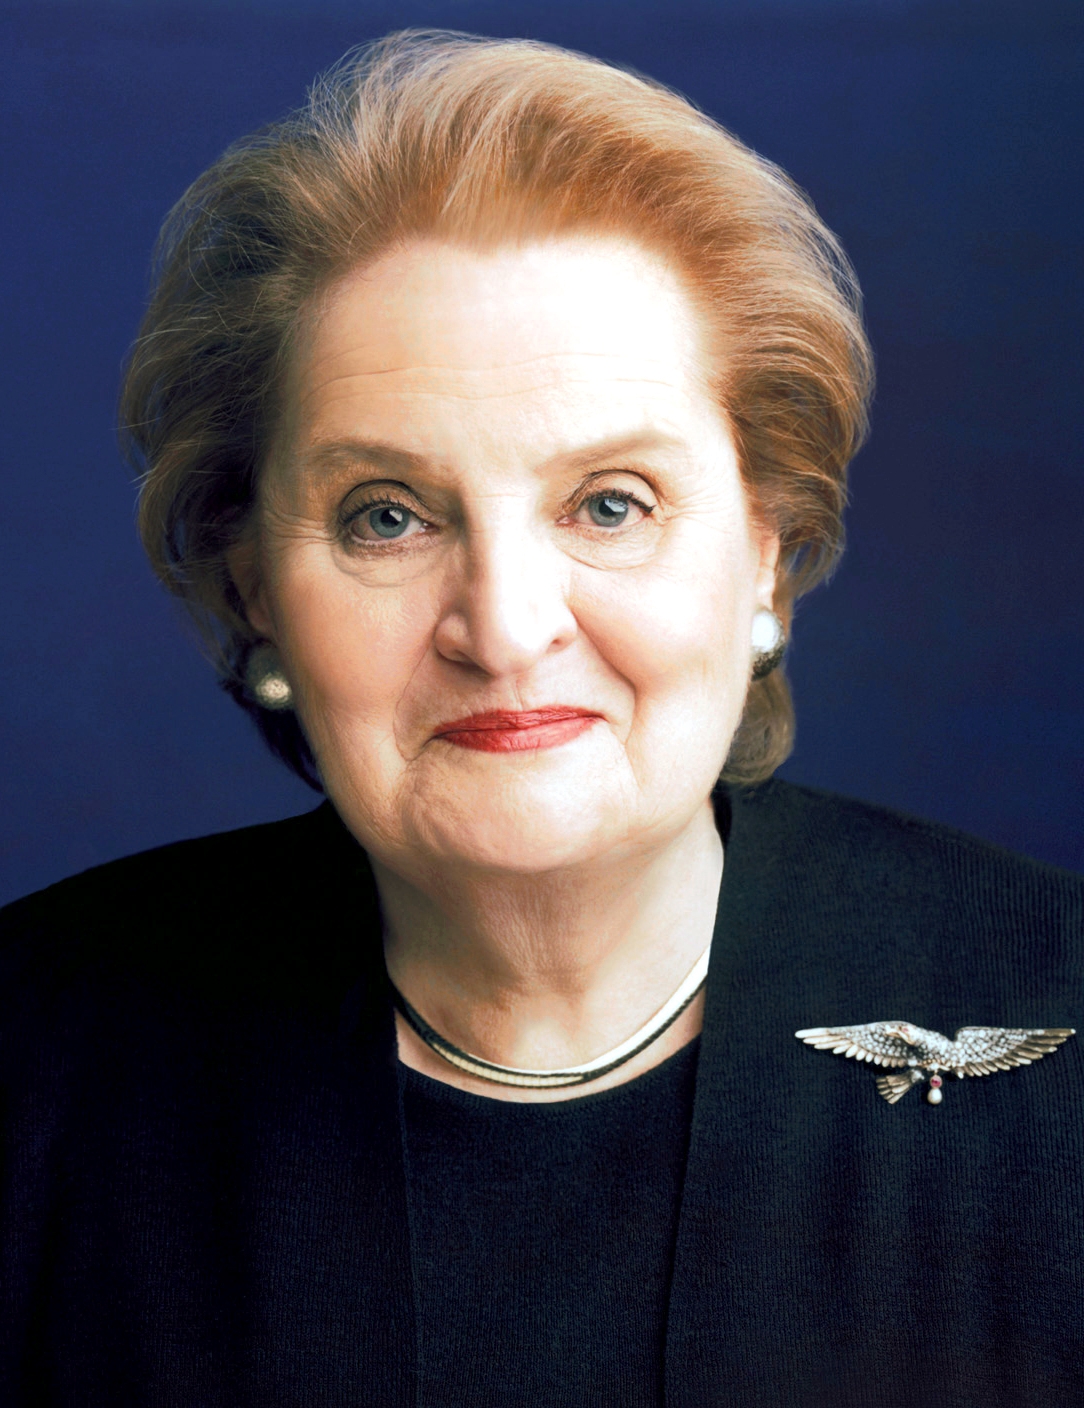 auteur Madeleine Albright de la citation En ce qui concerne les obstacles, une fois que j'ai rejoint le gouvernement, j'ai eu beaucoup de chance parce que j'avais tous mes références ensemble, j'étais docteur Albright ... donc quand quelqu'un voulait que la seule femme que je me suis assurée de savoir que j'étais fiable et qualifié.